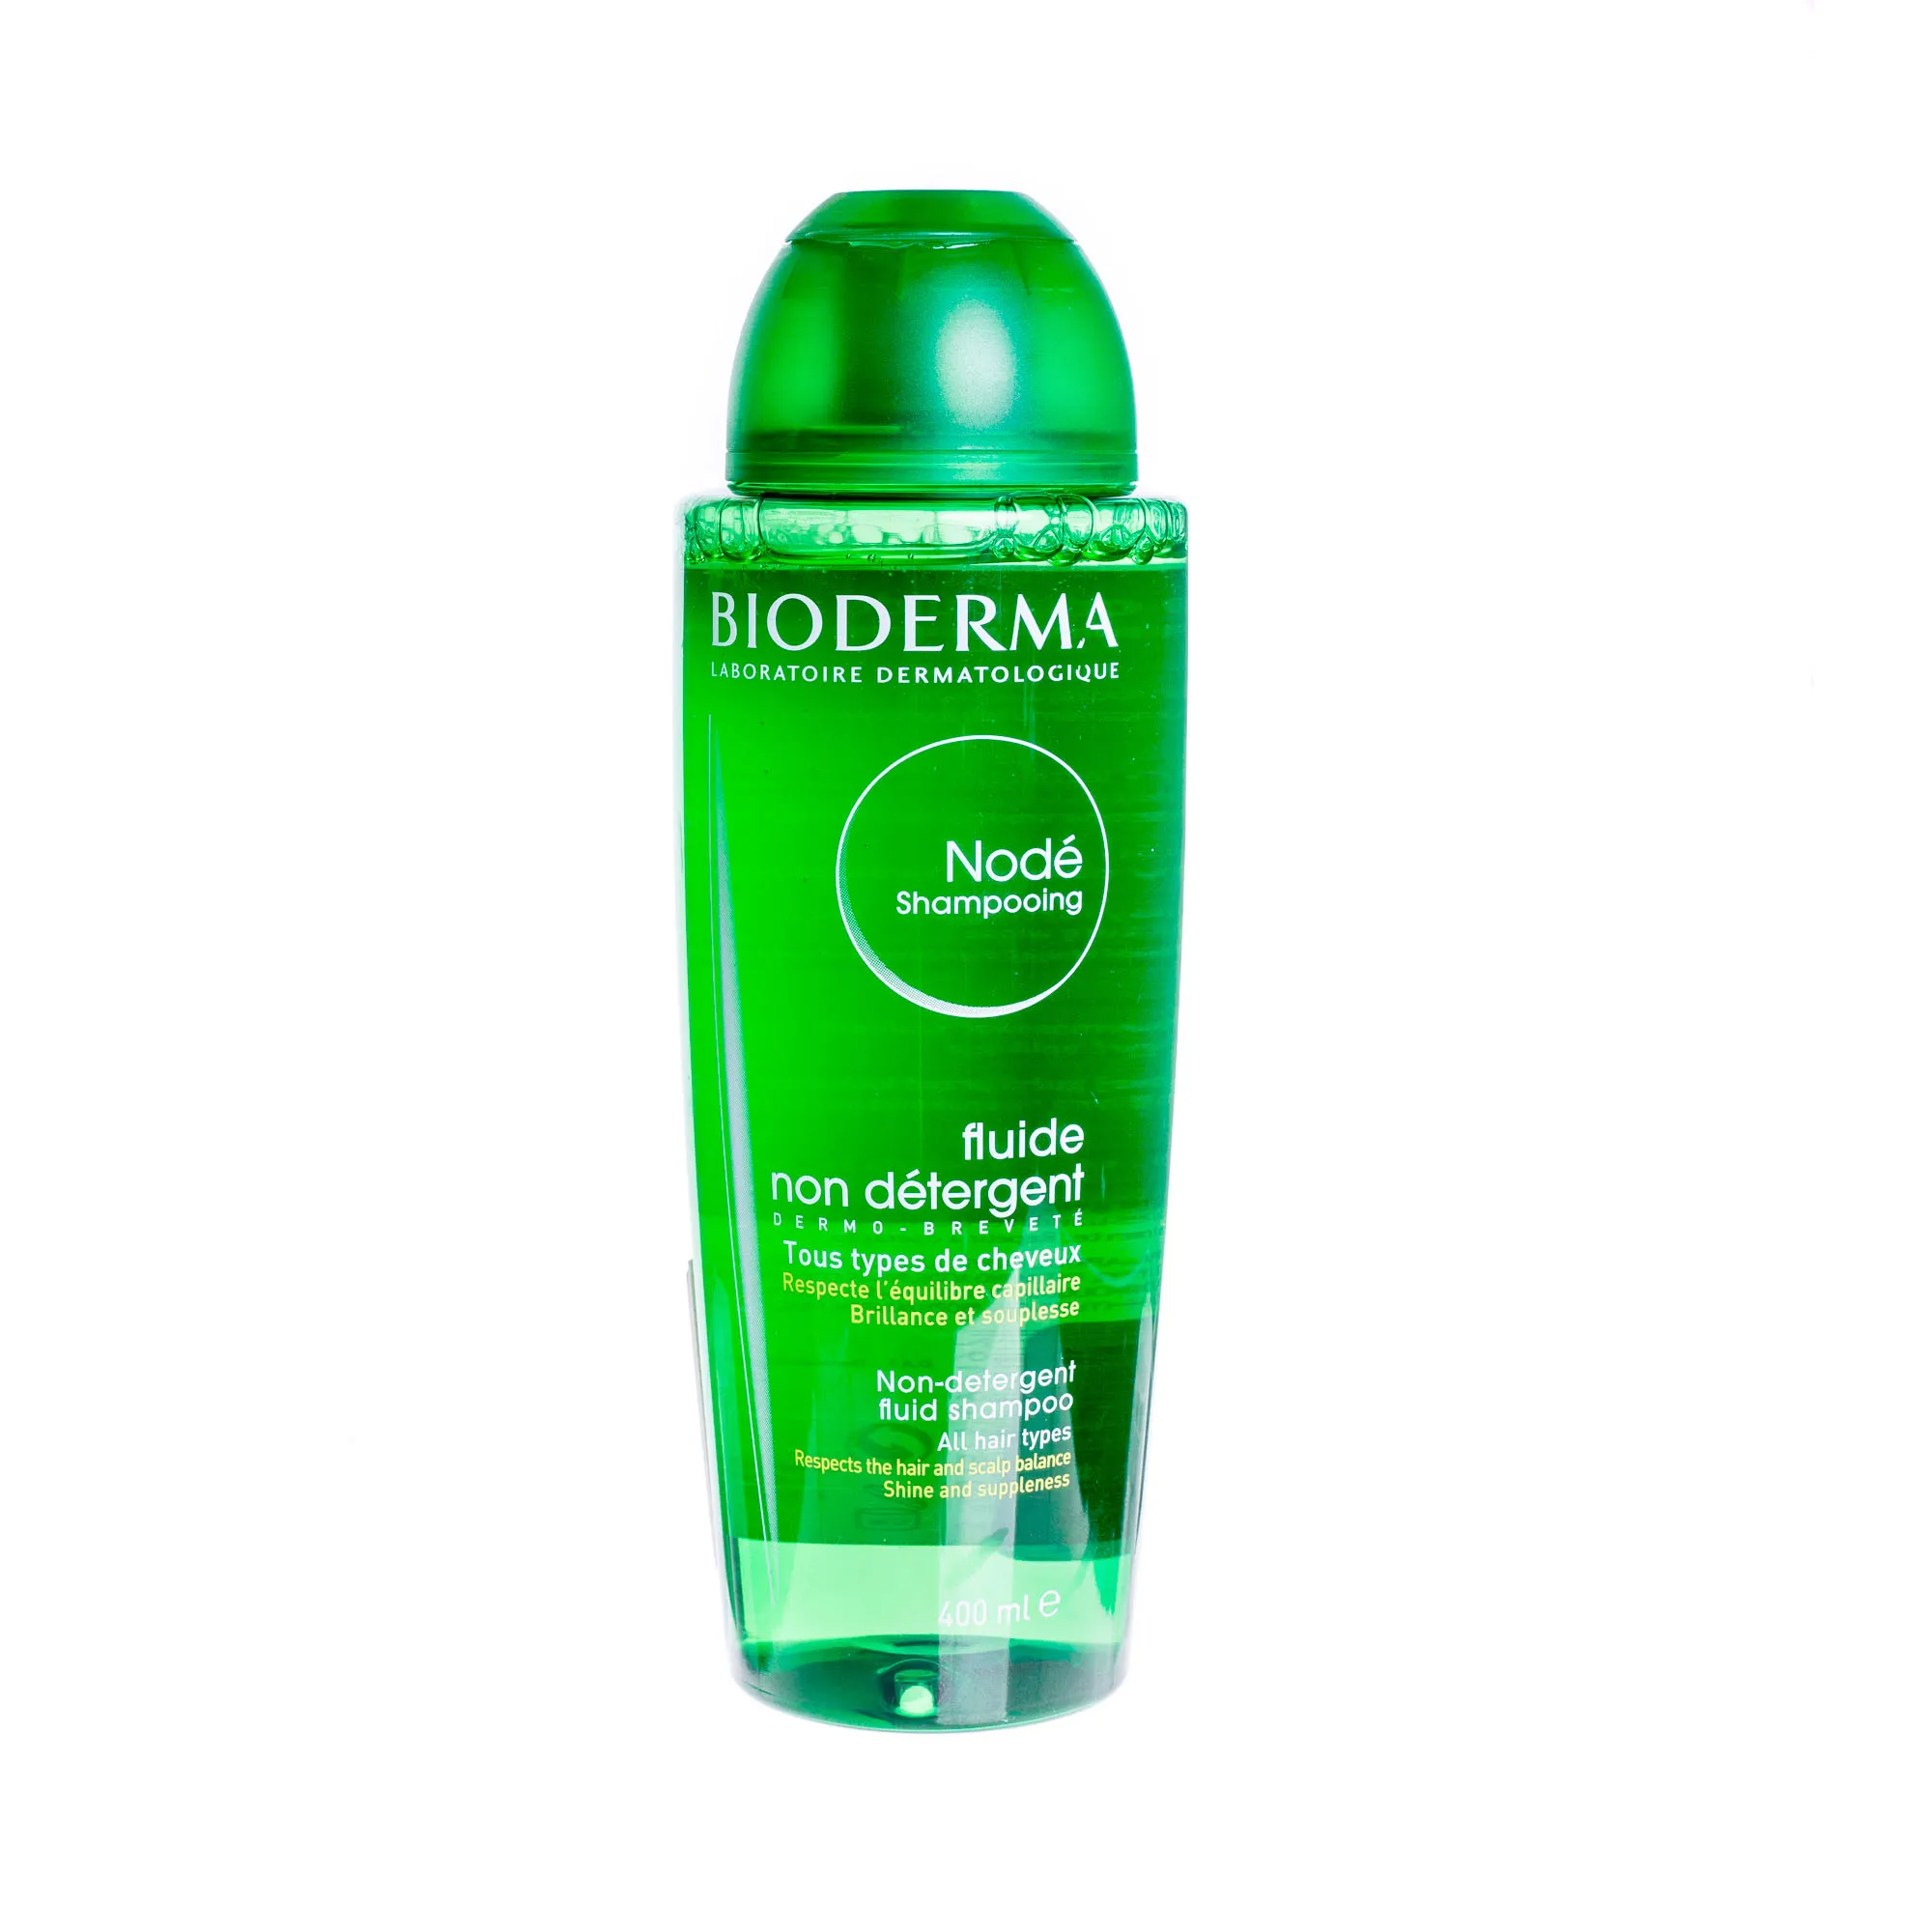 Bioderma Node Fluide, delikatny szampon do codziennego stosowania, 400 ml